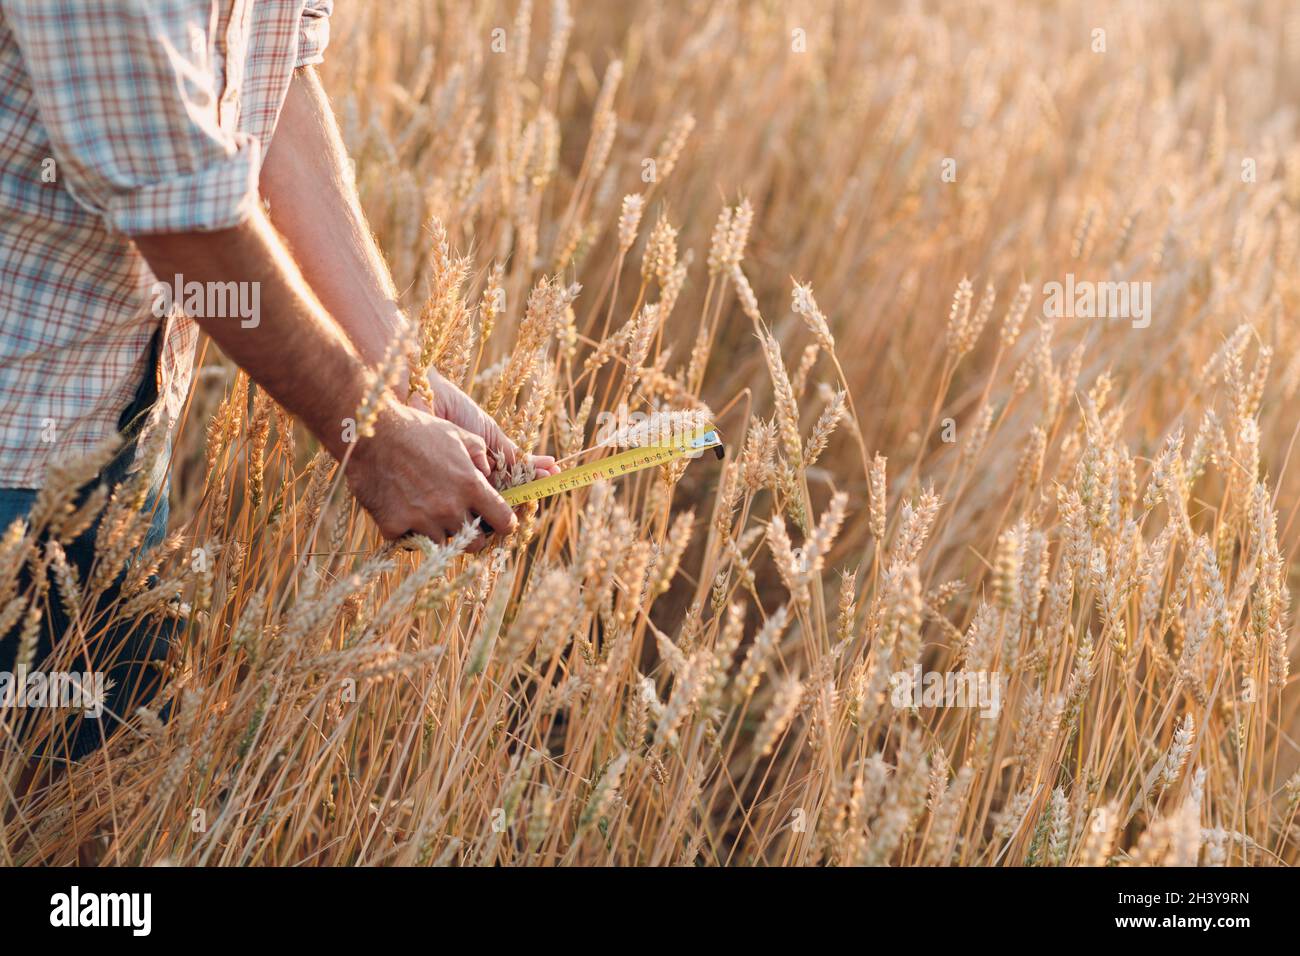 Landwirt untersuchen und messen mit Lineal Weizenohren auf landwirtschaftlichem Feld. Umfassendes Erntekonzept Stockfoto